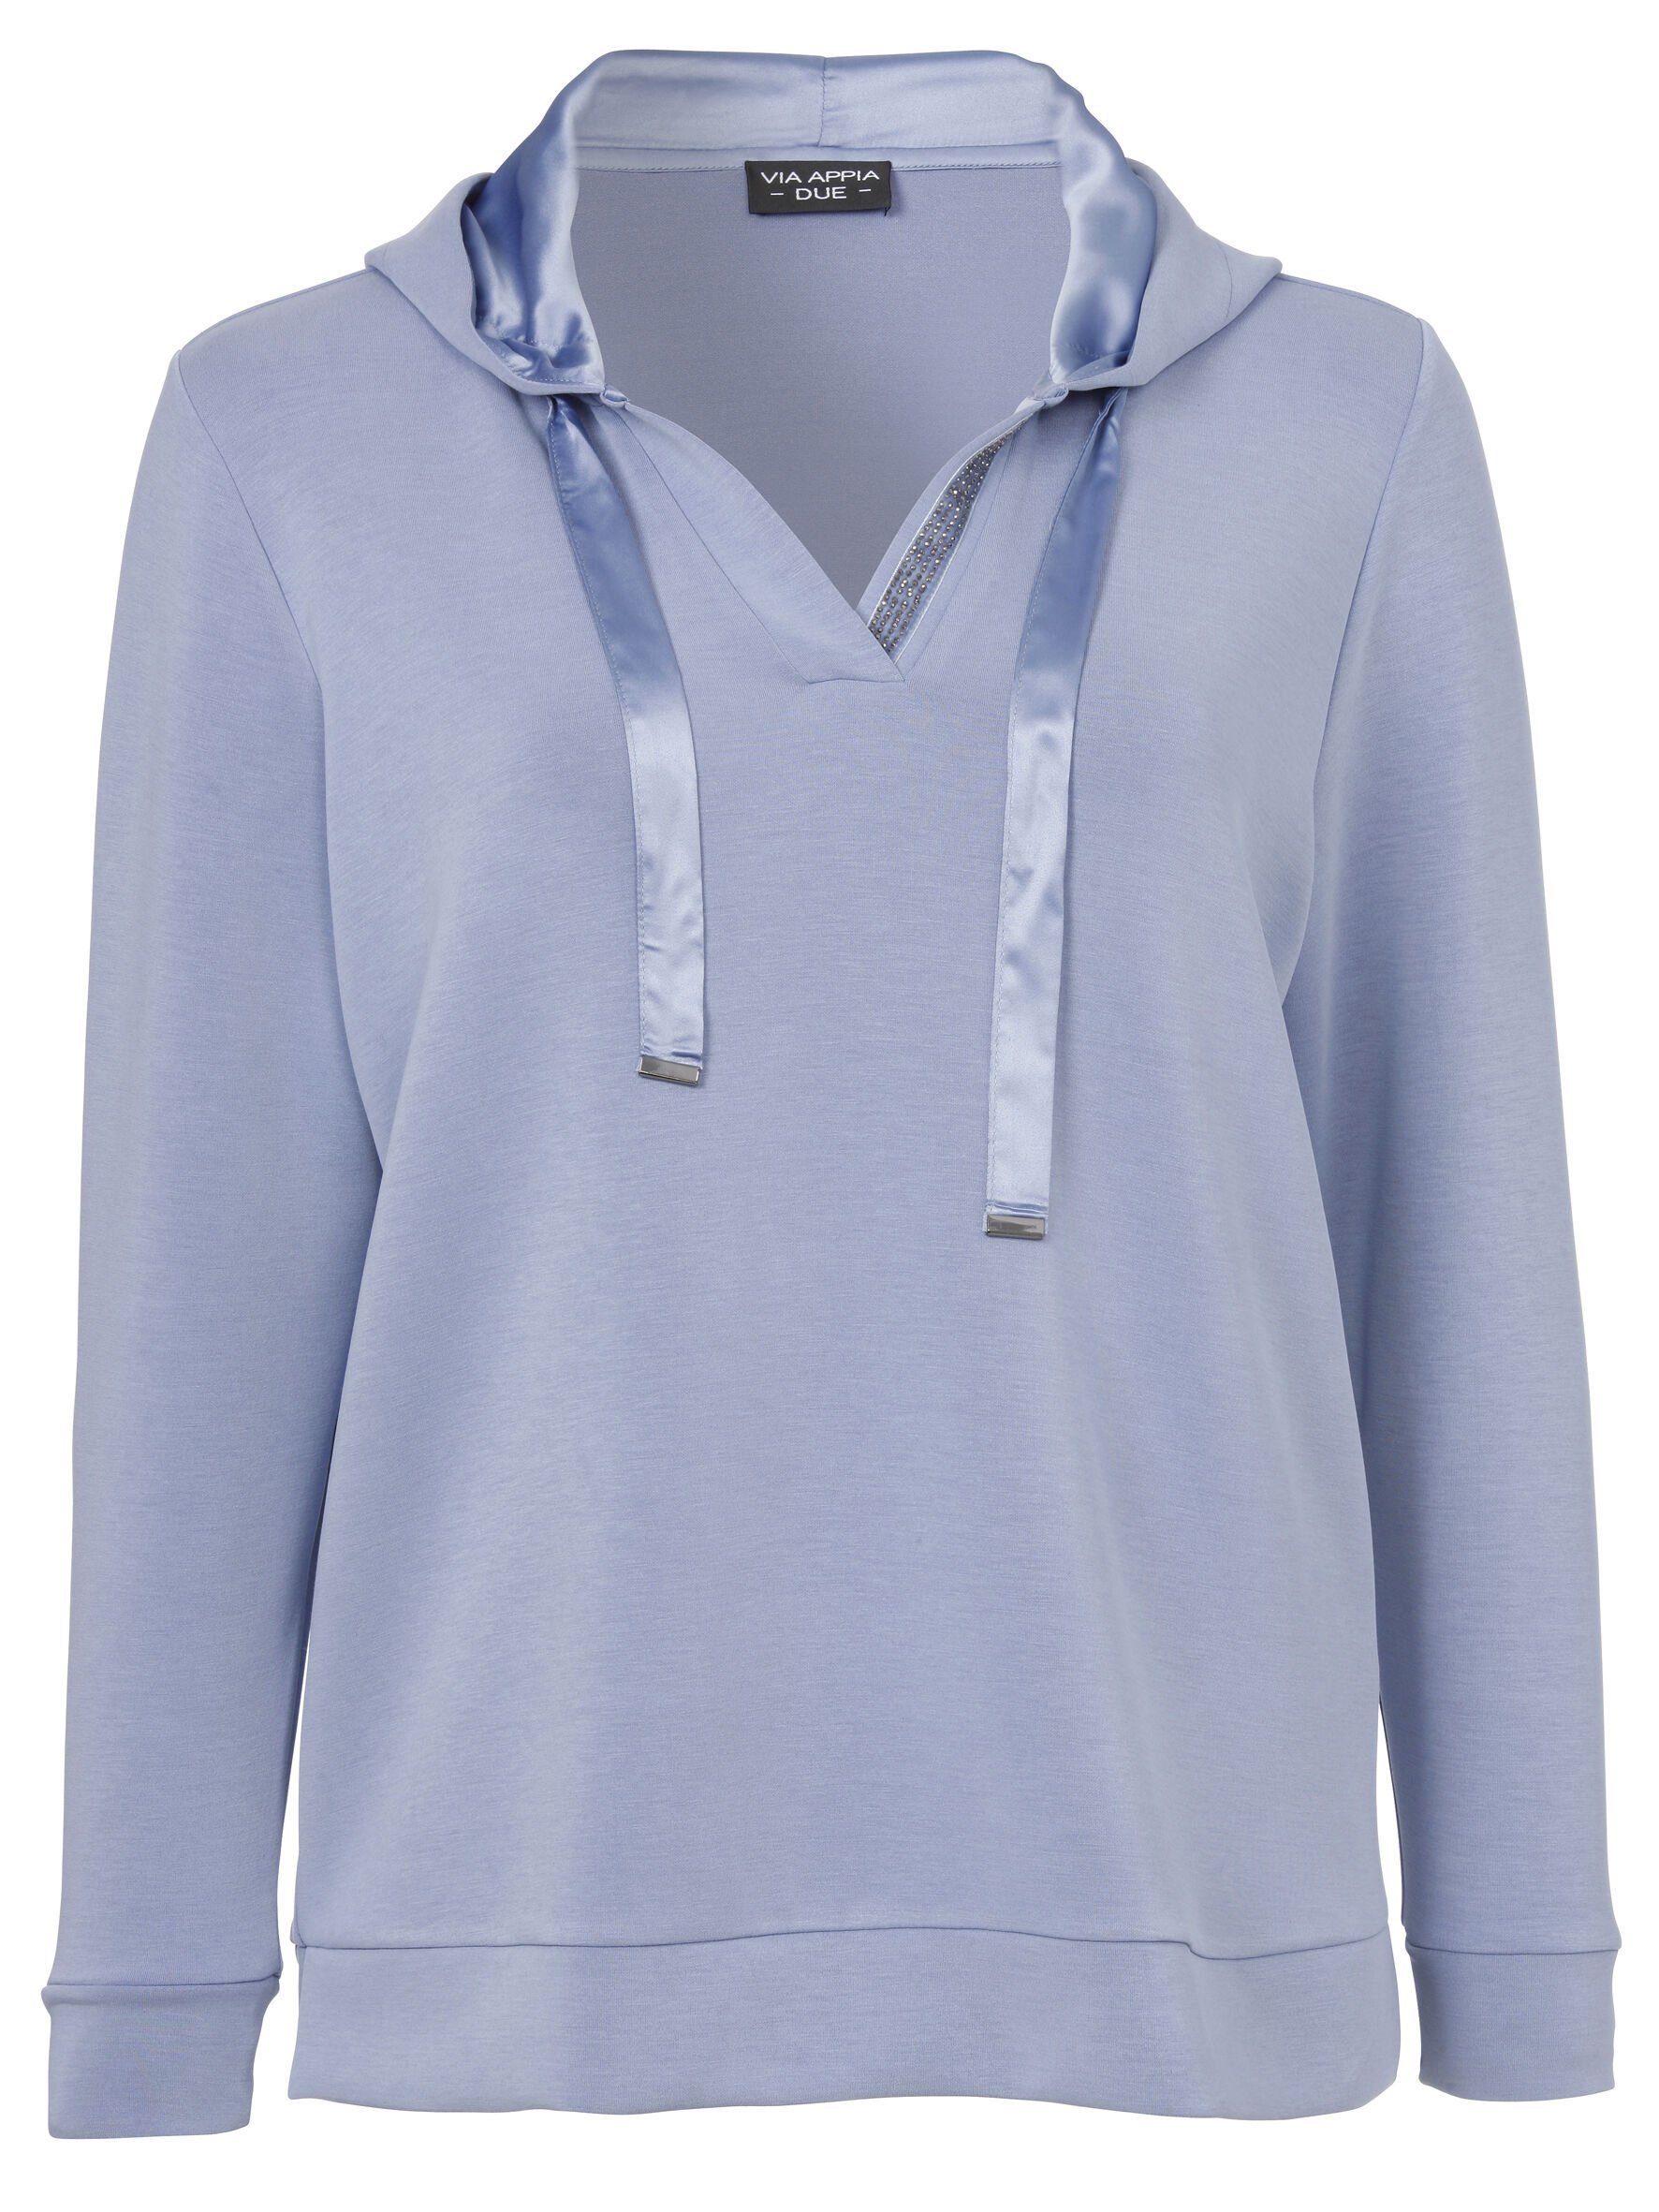 Stil Sweatshirt DUE Sportives Sweatshirt mit Viskosemischung VIA rauchblau hochwertigen in APPIA unifarbenem